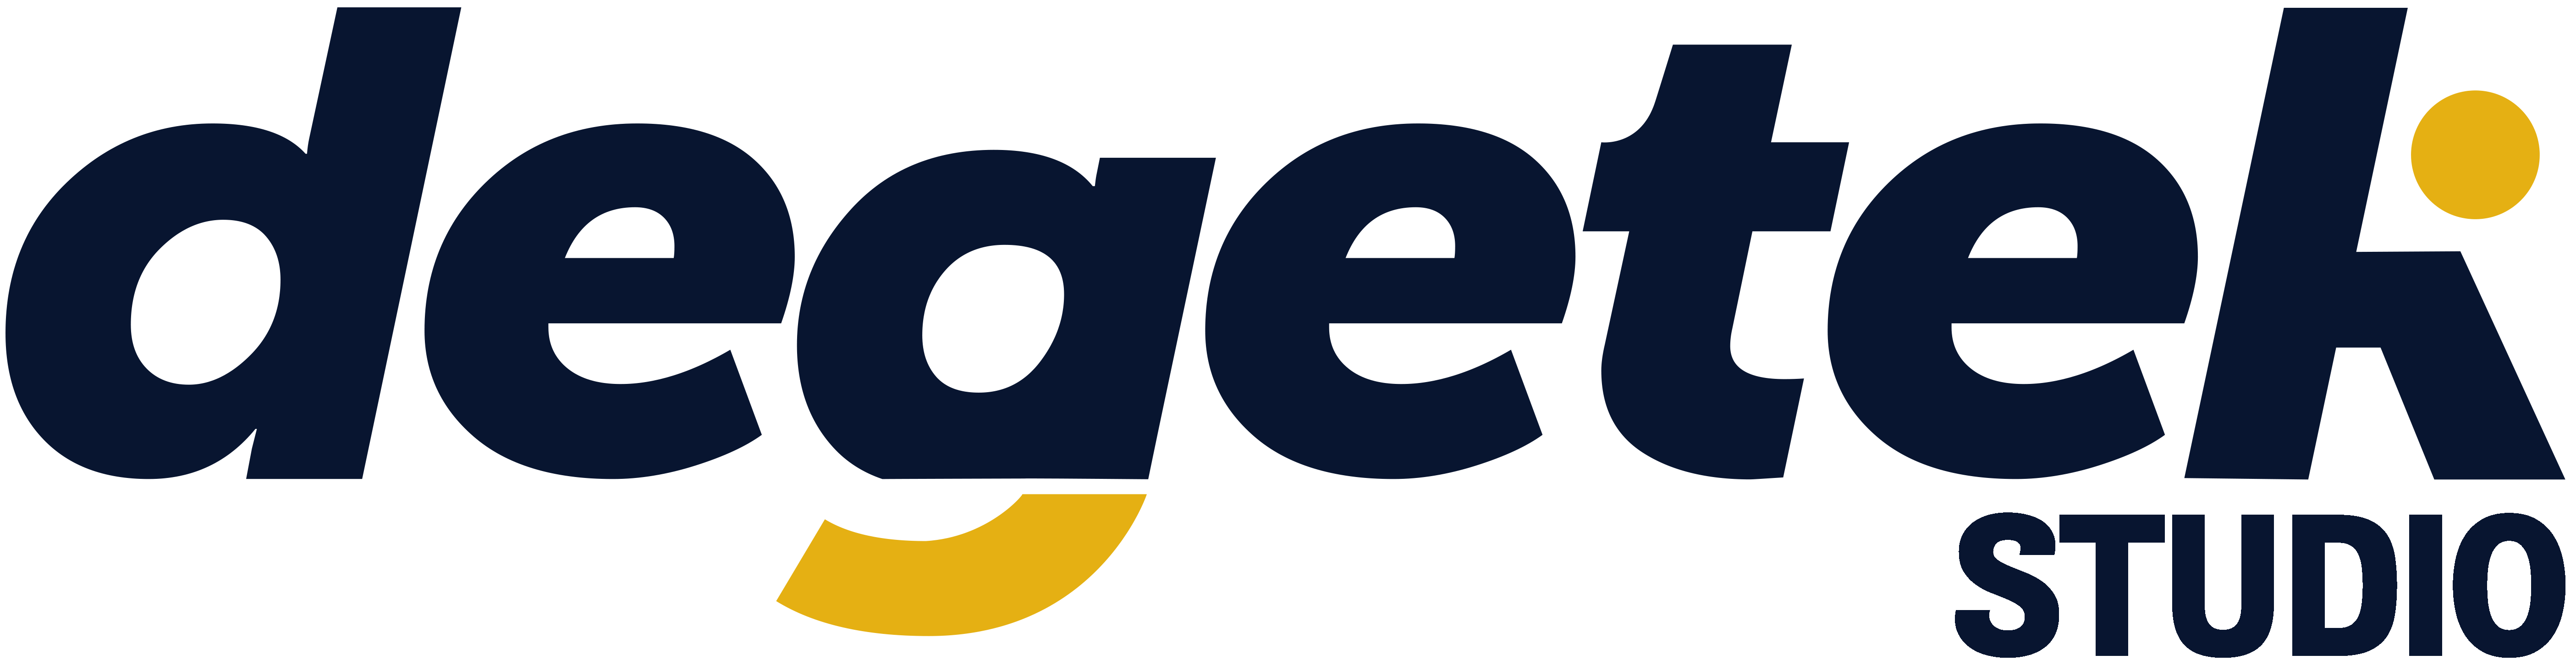 Degetek logo